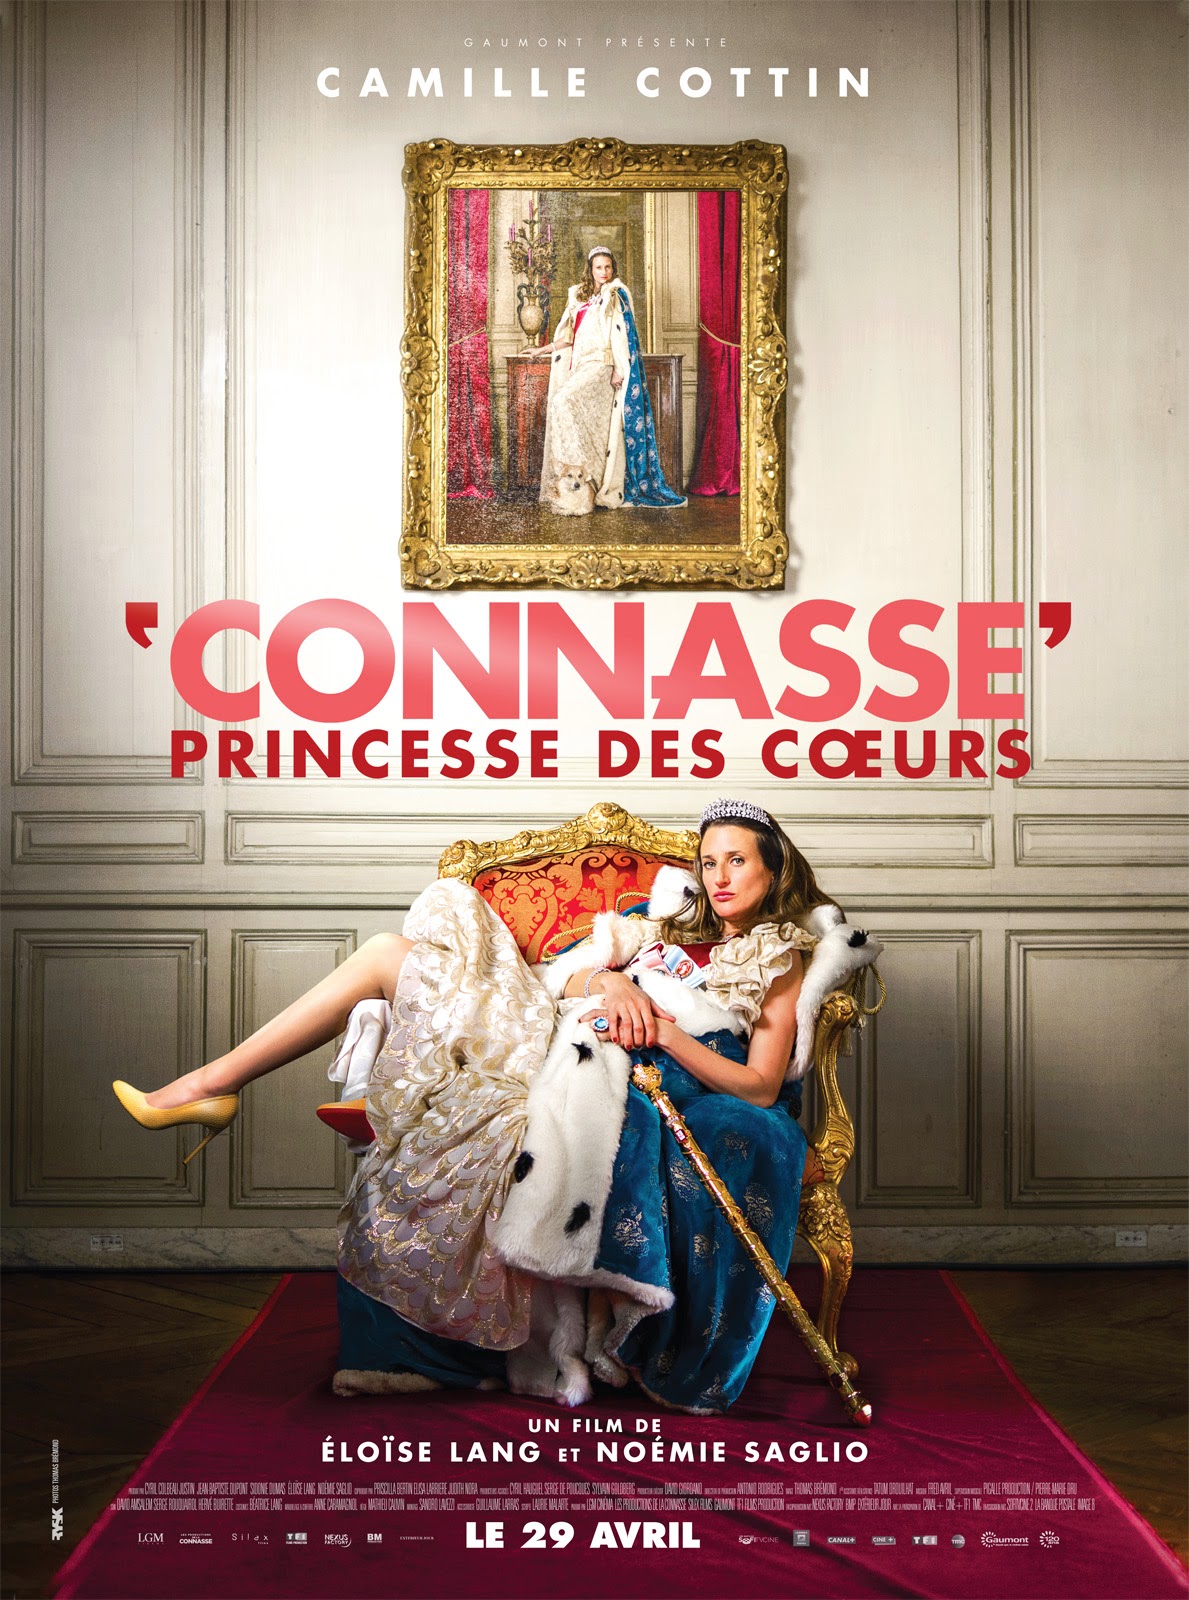 http://fuckingcinephiles.blogspot.fr/2015/04/critique-connasse-princesse-des-curs.html